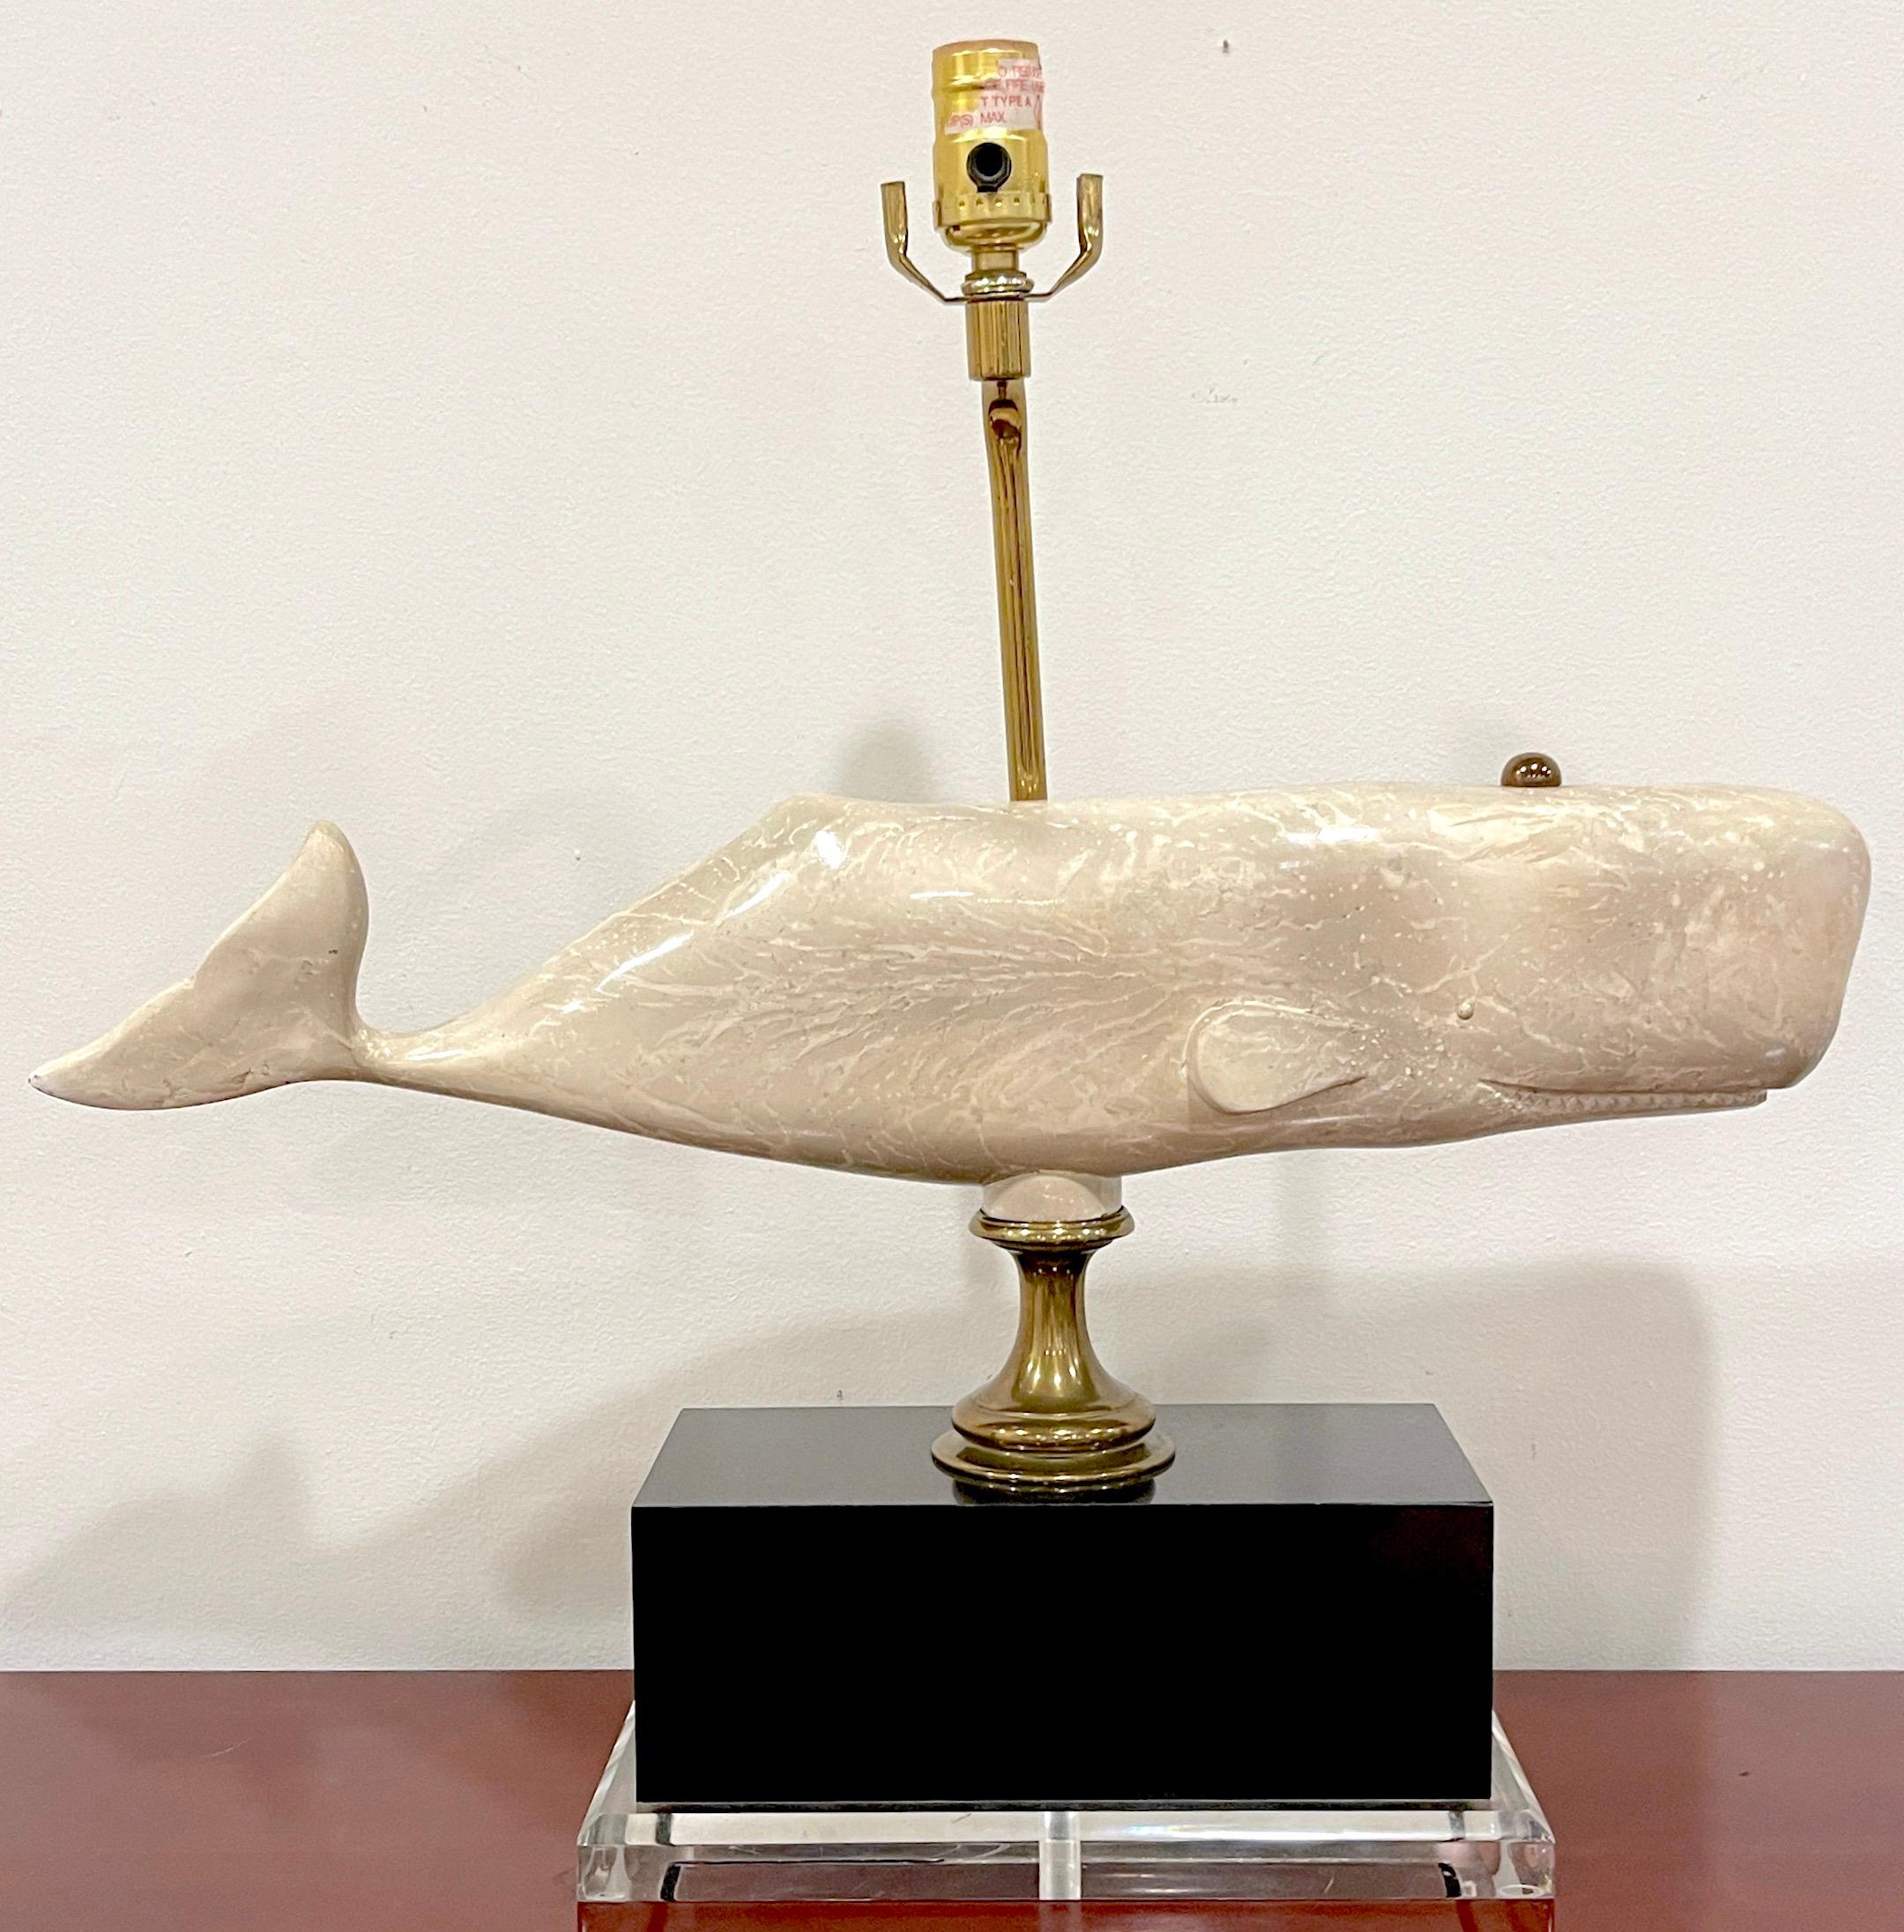 Lampe baleine figurative Marin du milieu du siècle, Bauer Lamp Co, 1991
Un mélange captivant d'art et de fonctionnalité. Cette sculpture de baleine de 23 pouces de large, réaliste et de grande taille, est moulée de façon réaliste et décorée de façon